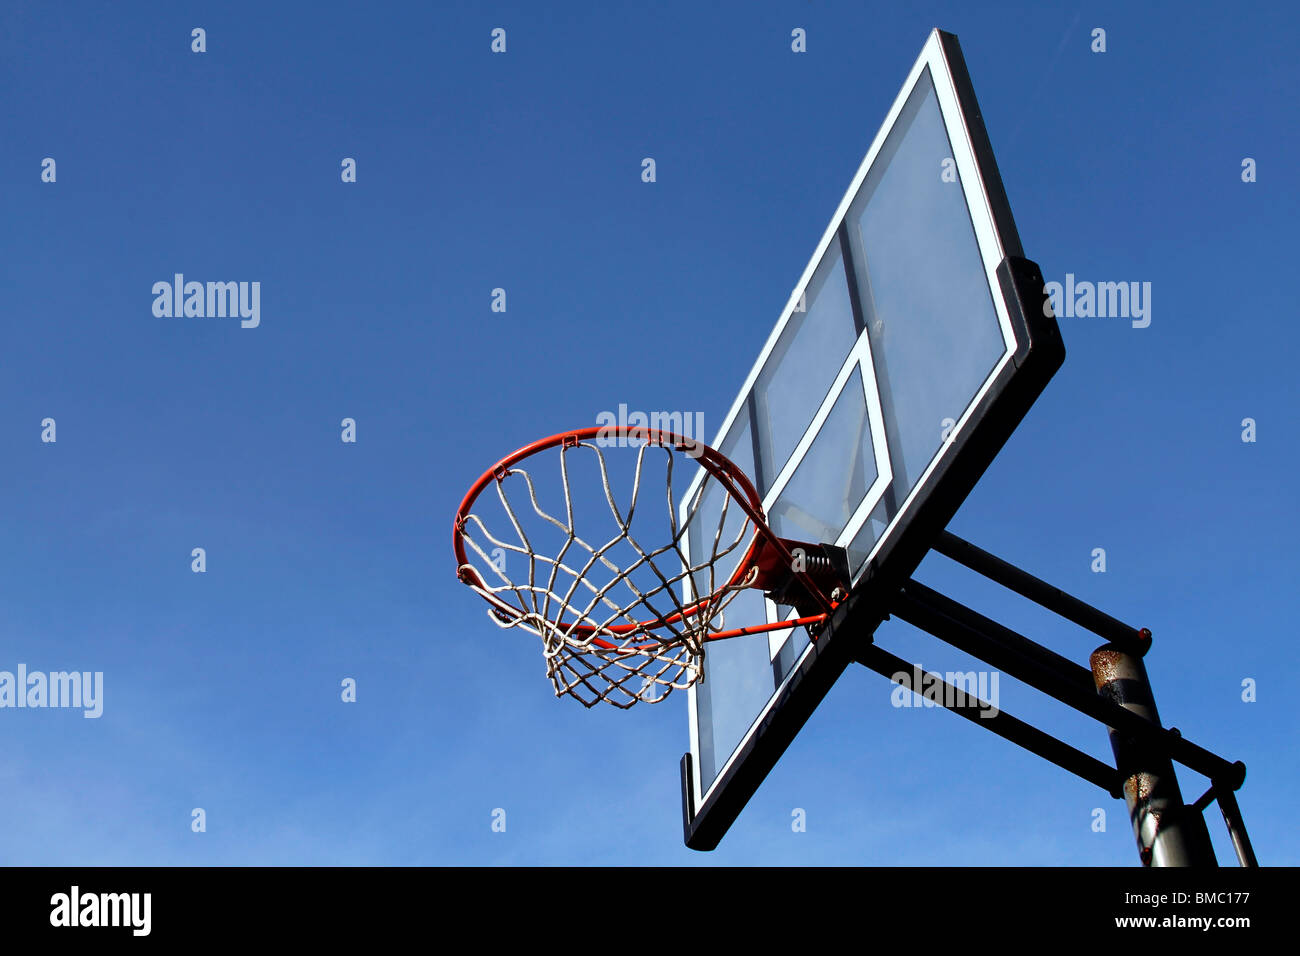 Canestro da basket immagini e fotografie stock ad alta risoluzione - Alamy